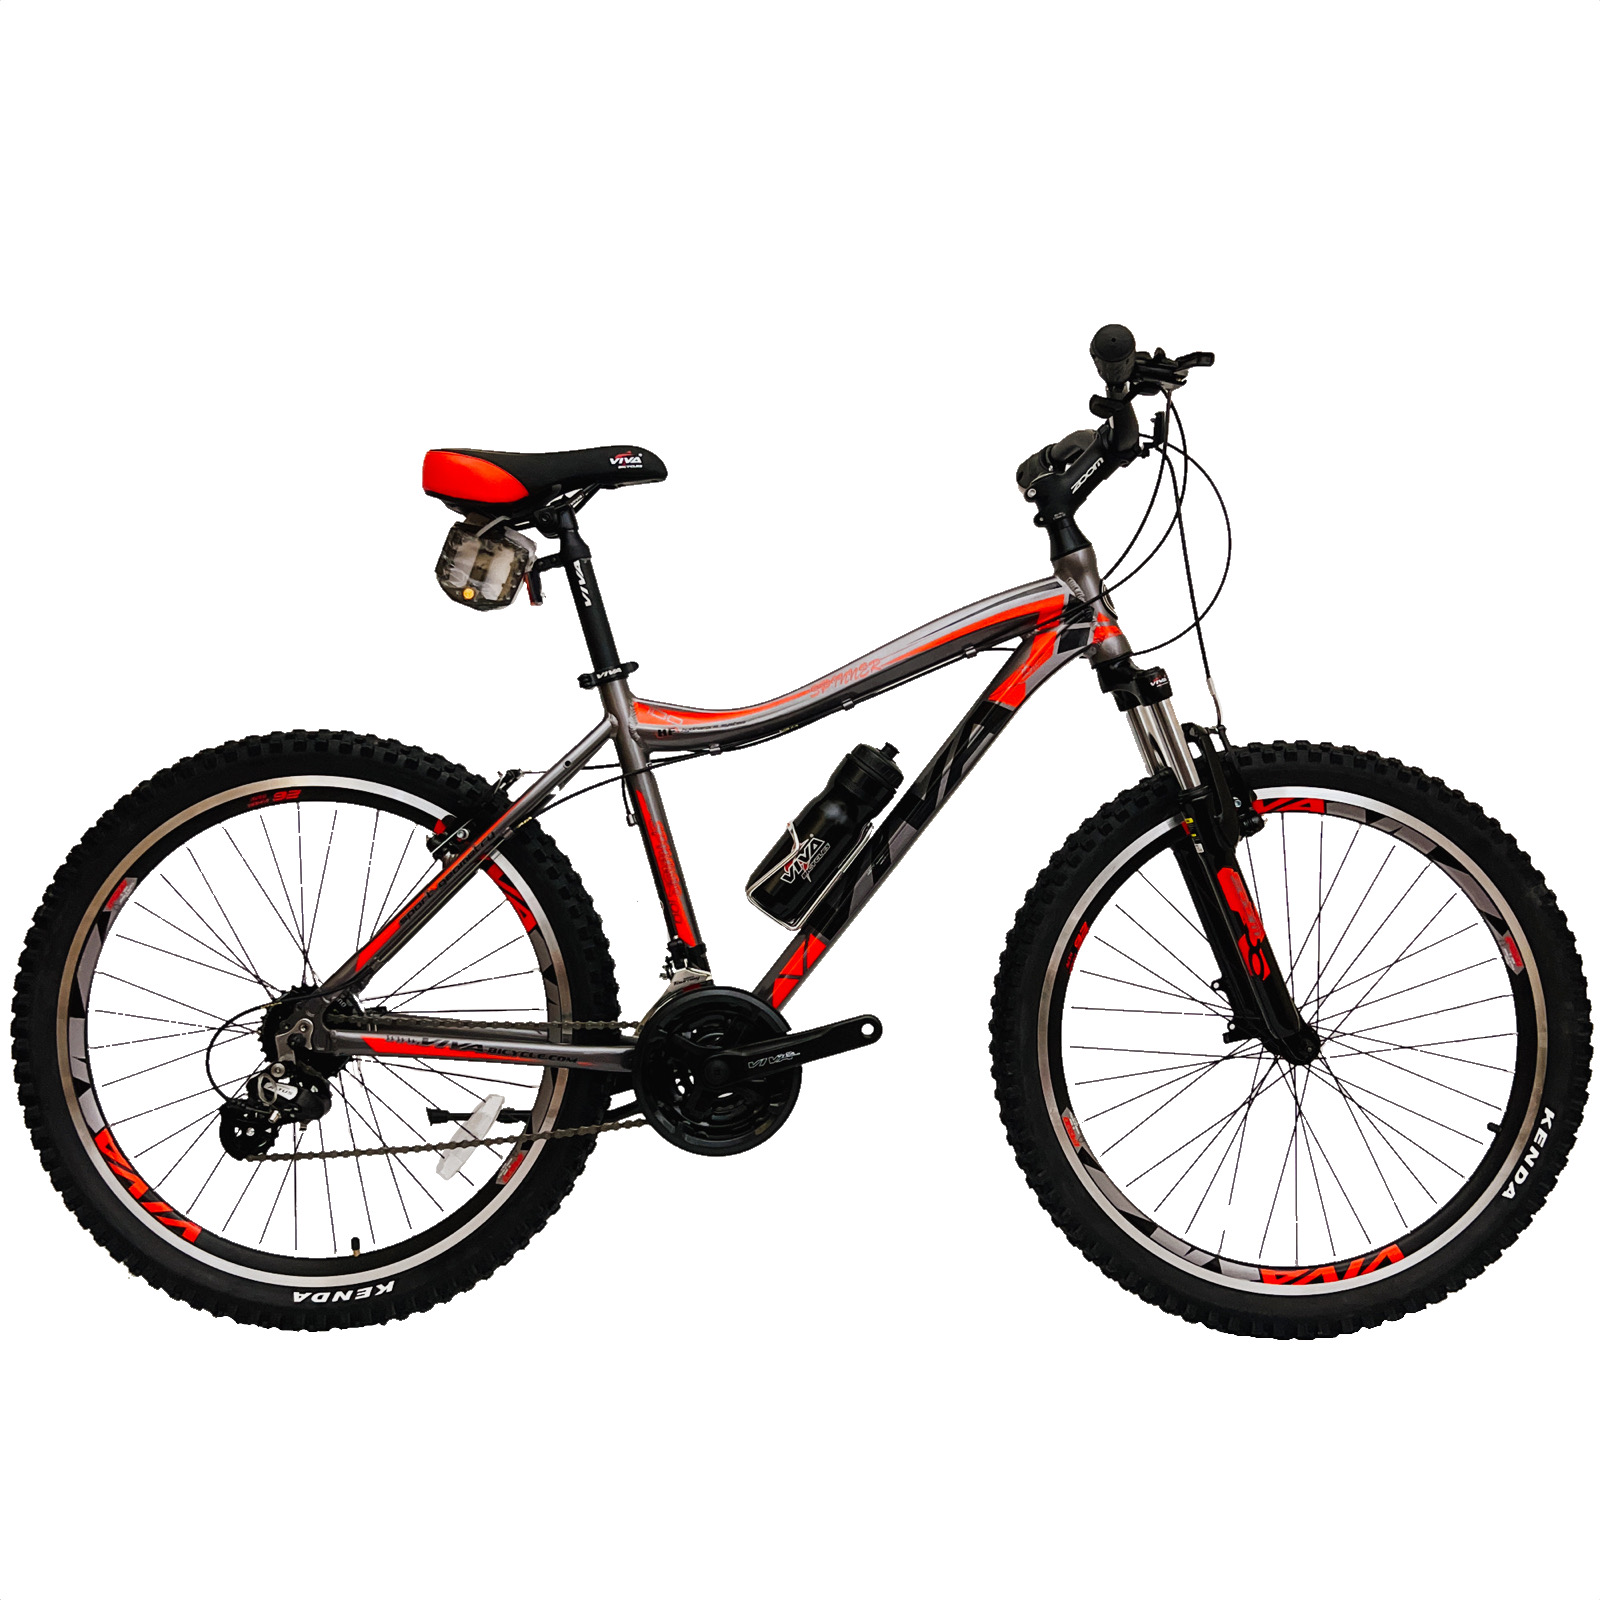 نکته خرید - قیمت روز دوچرخه کوهستان ویوا مدل SPINNER 100 سایز 26 خرید